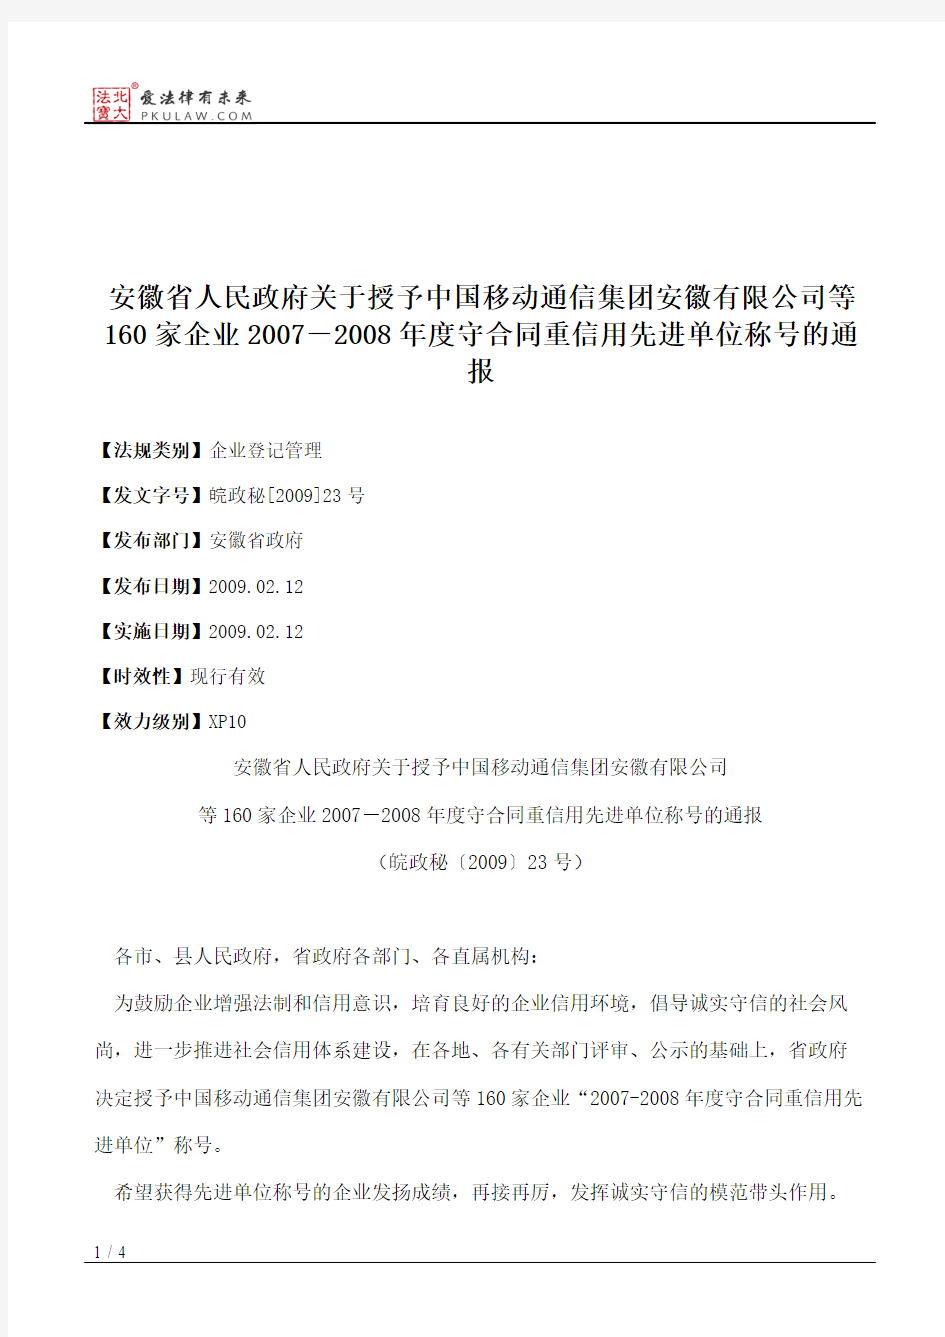 安徽省人民政府关于授予中国移动通信集团安徽有限公司等160家企业